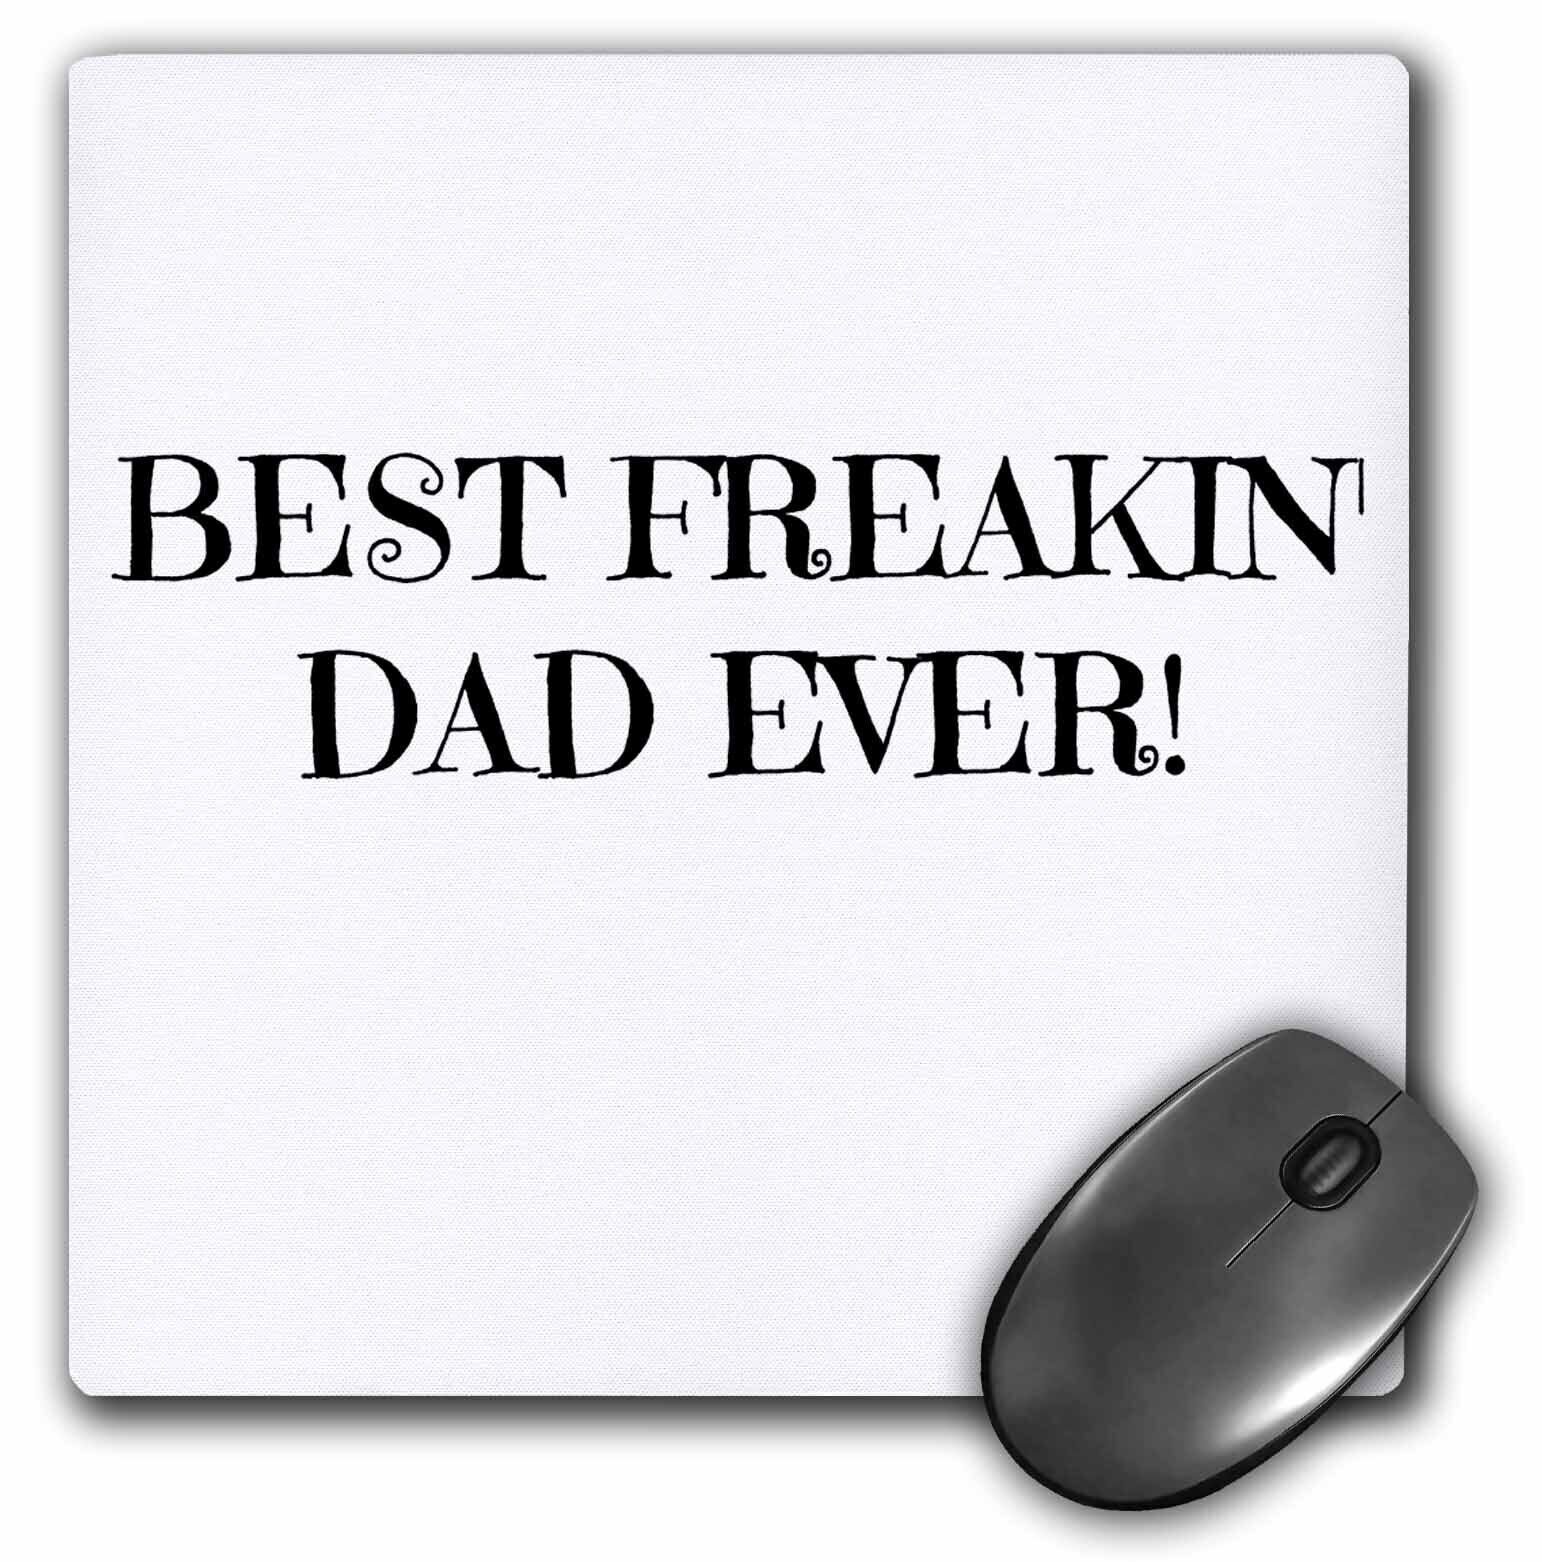 3dRose Best Freakin Dad Ever MousePad